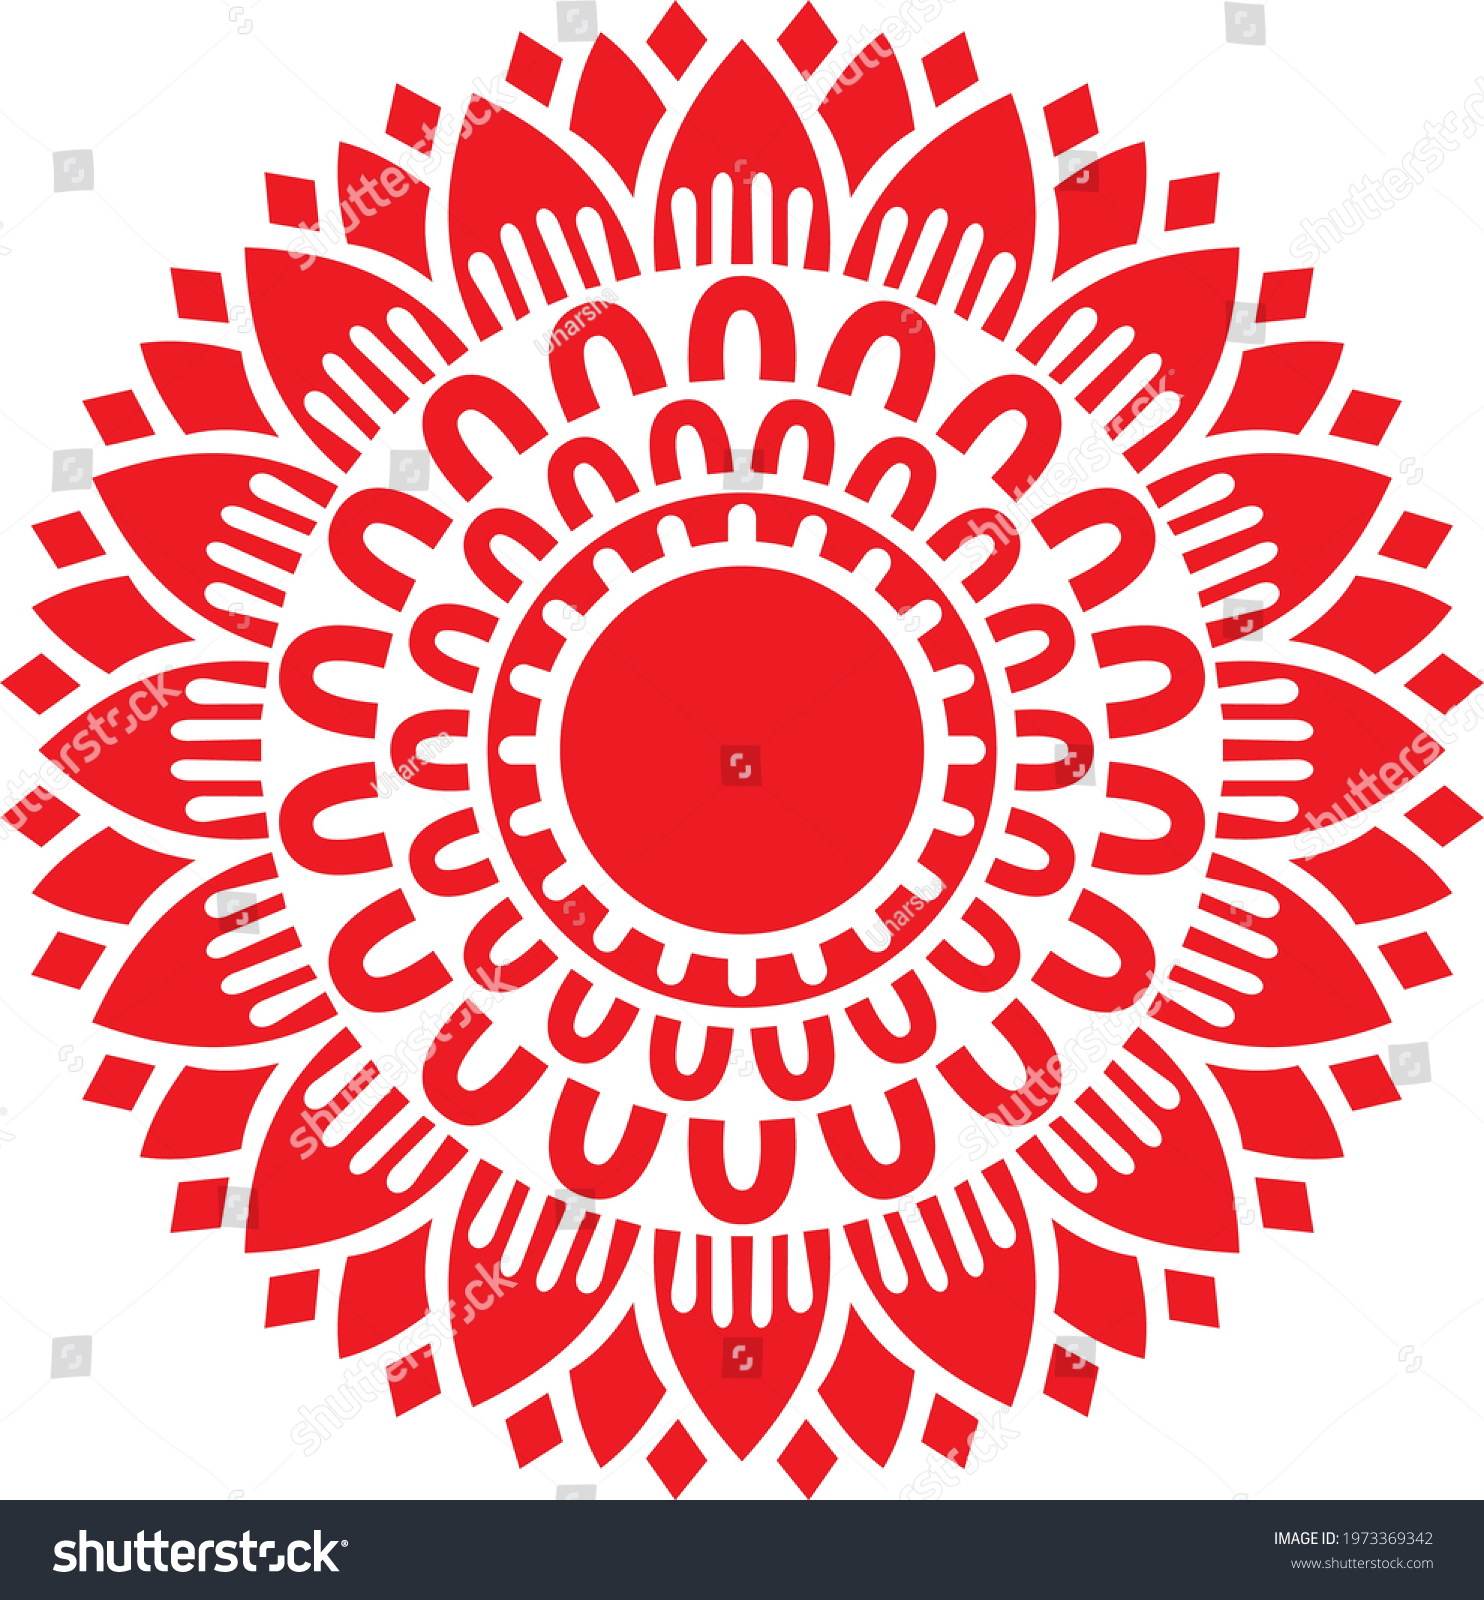 SVG of Simple floral Mandala wall art: Aipan, Alpana Vector image svg